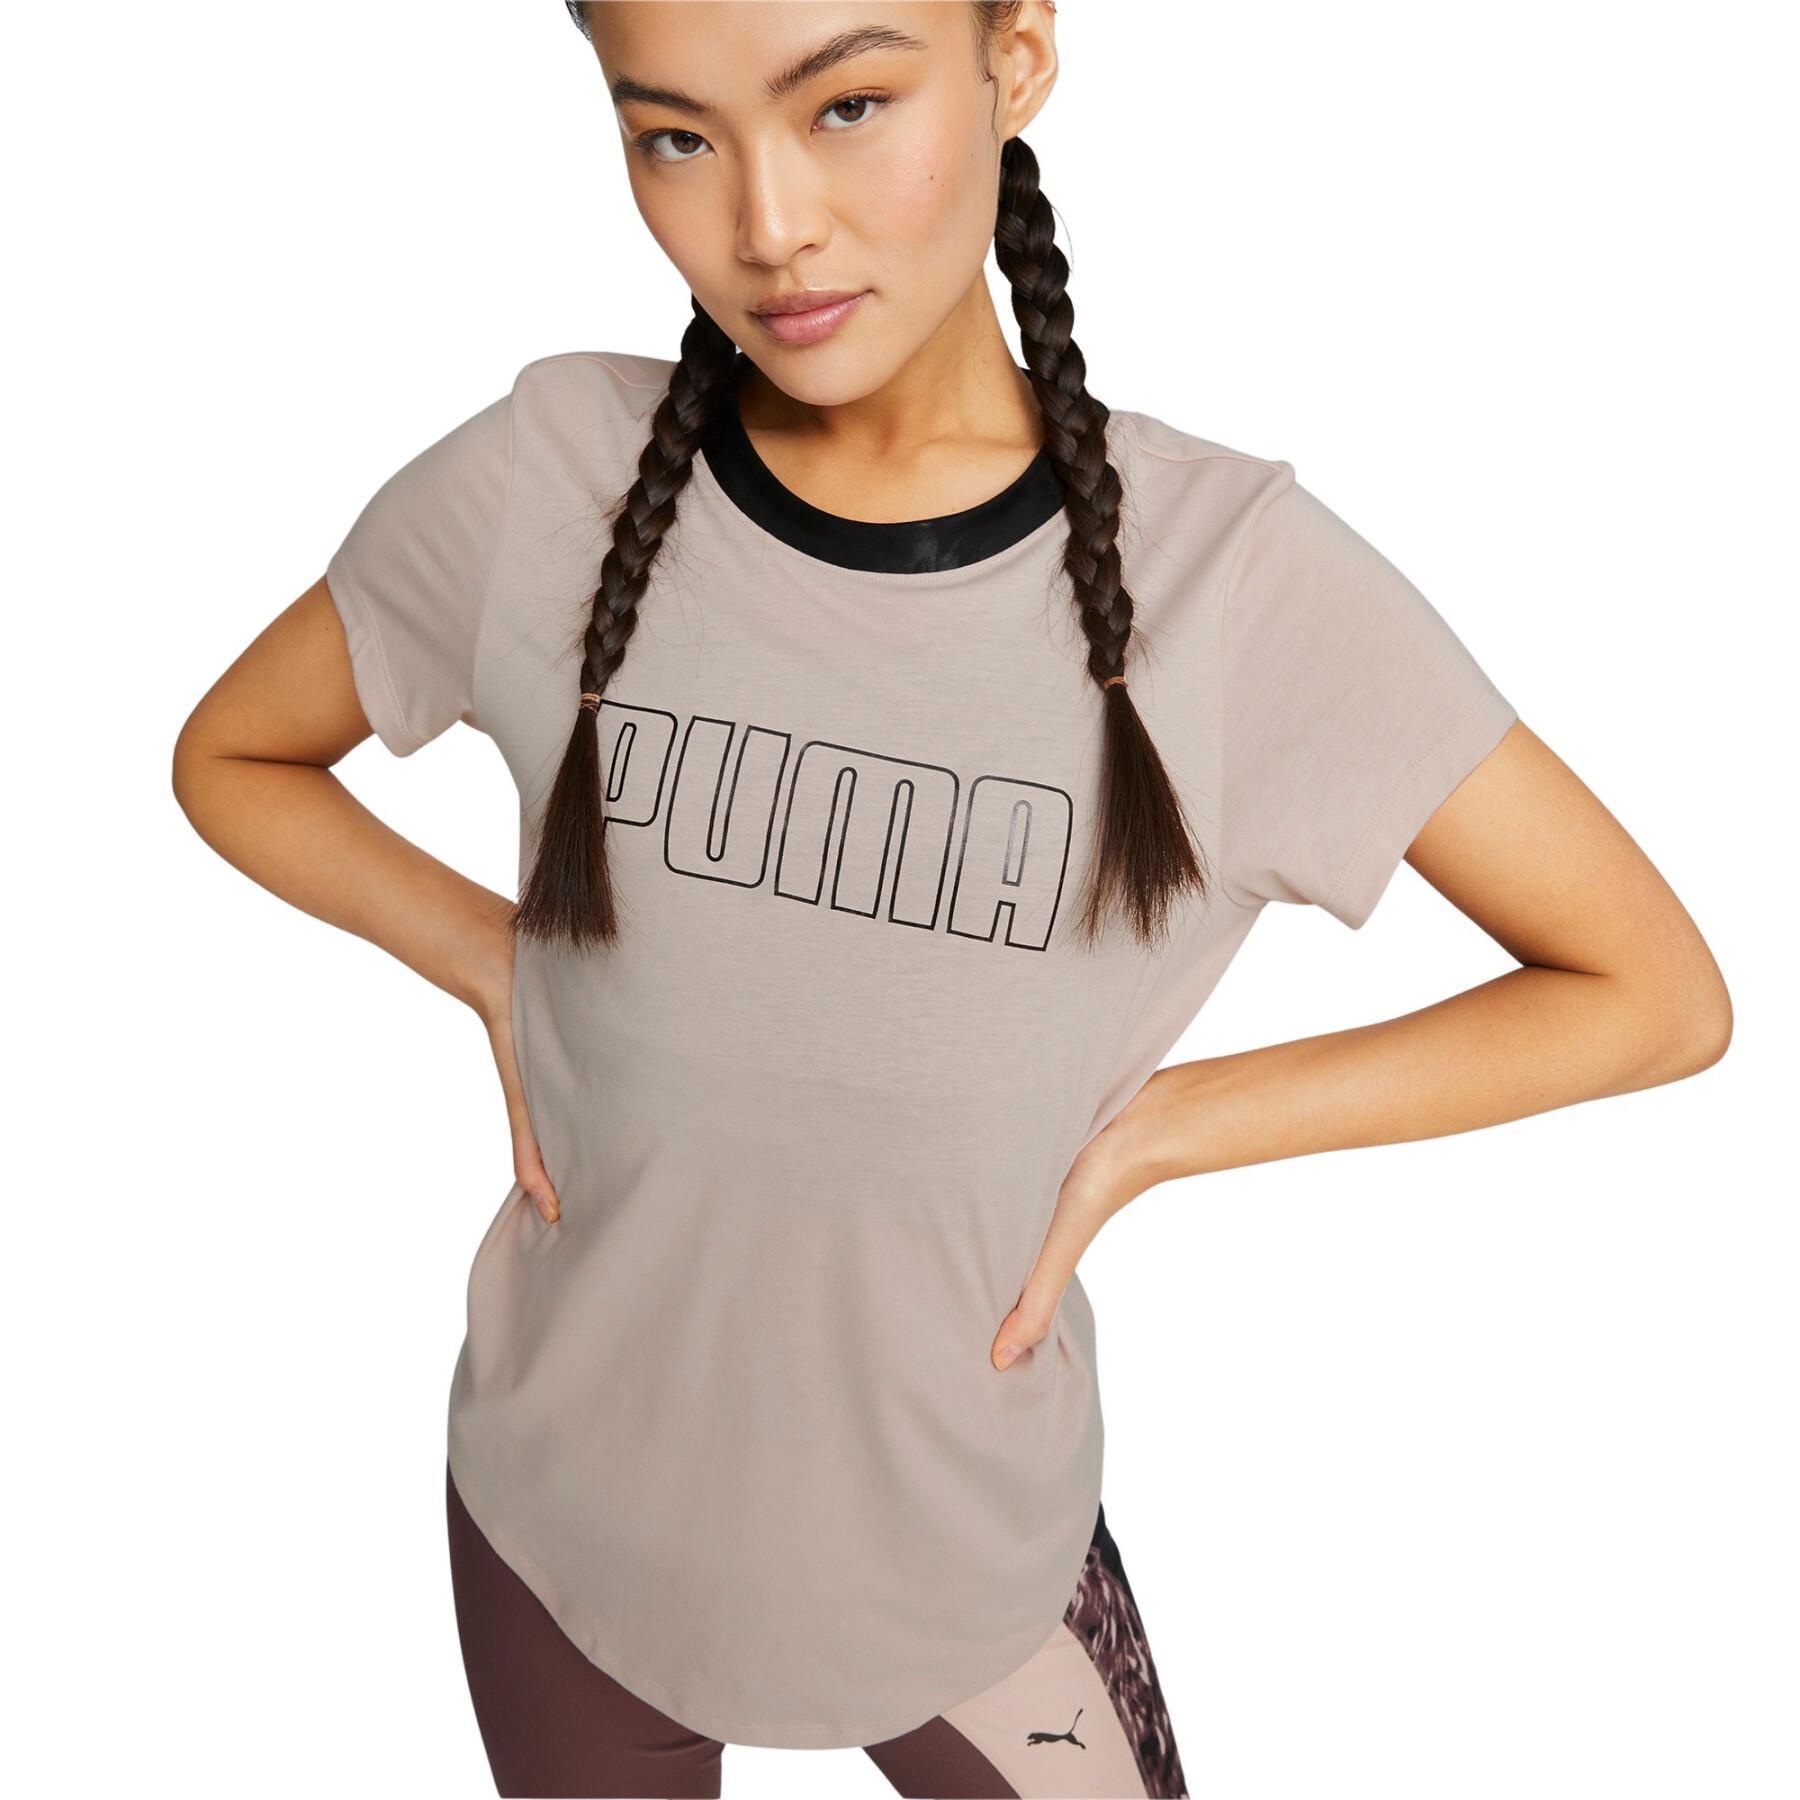 T-shirt för kvinnor Puma Safari Glam